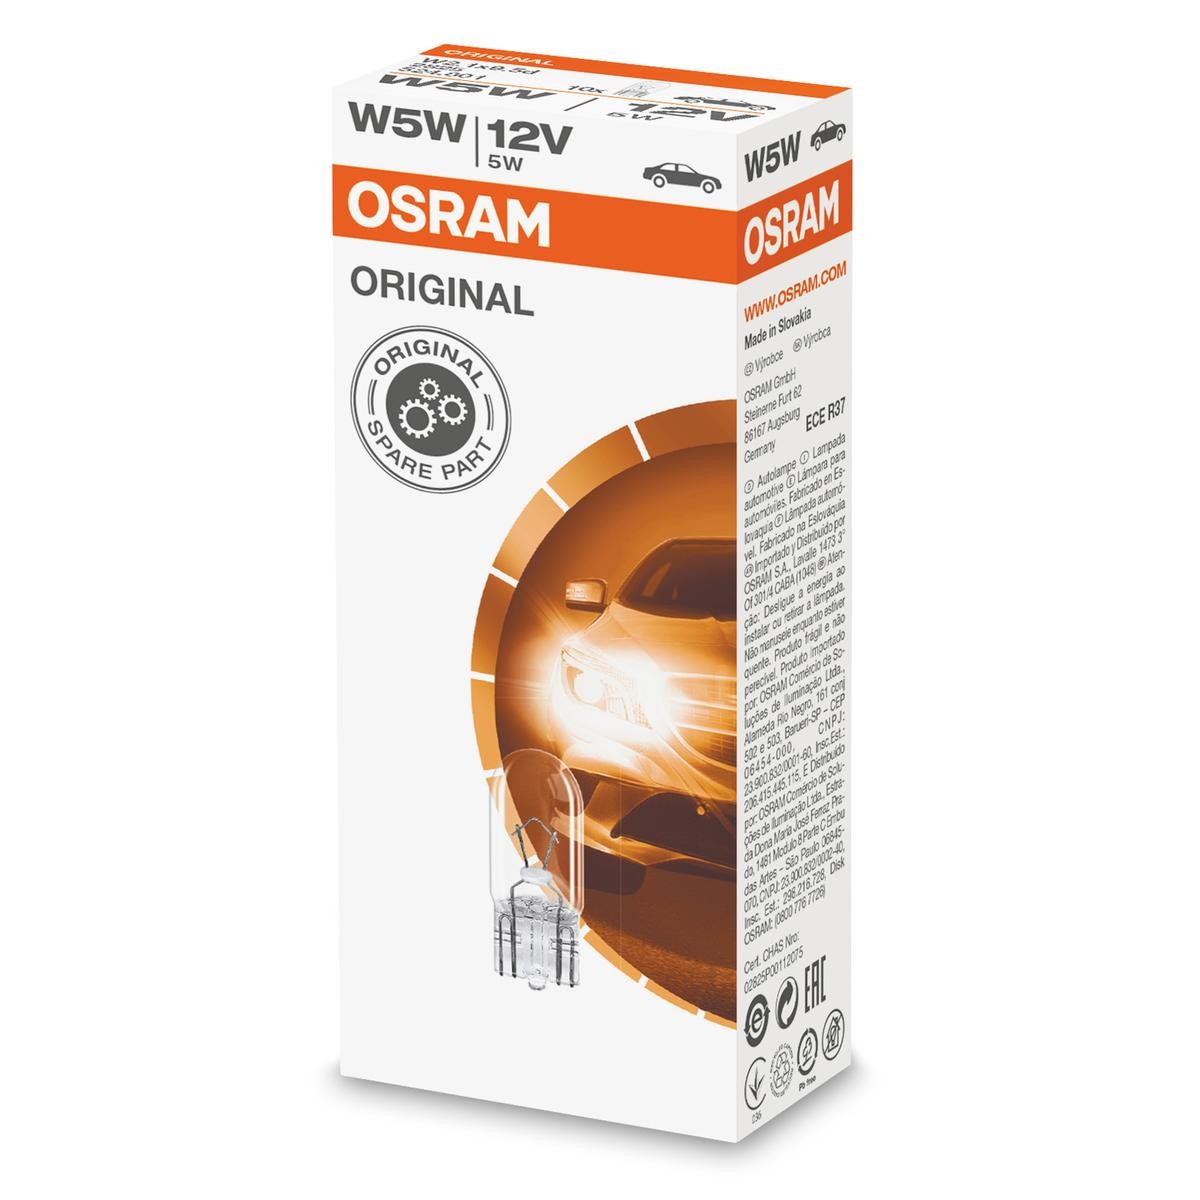 W5W OSRAM ORIGINAL LINE 12V 5W, W5W Glödlampa, blinker 2825 köp lågt pris